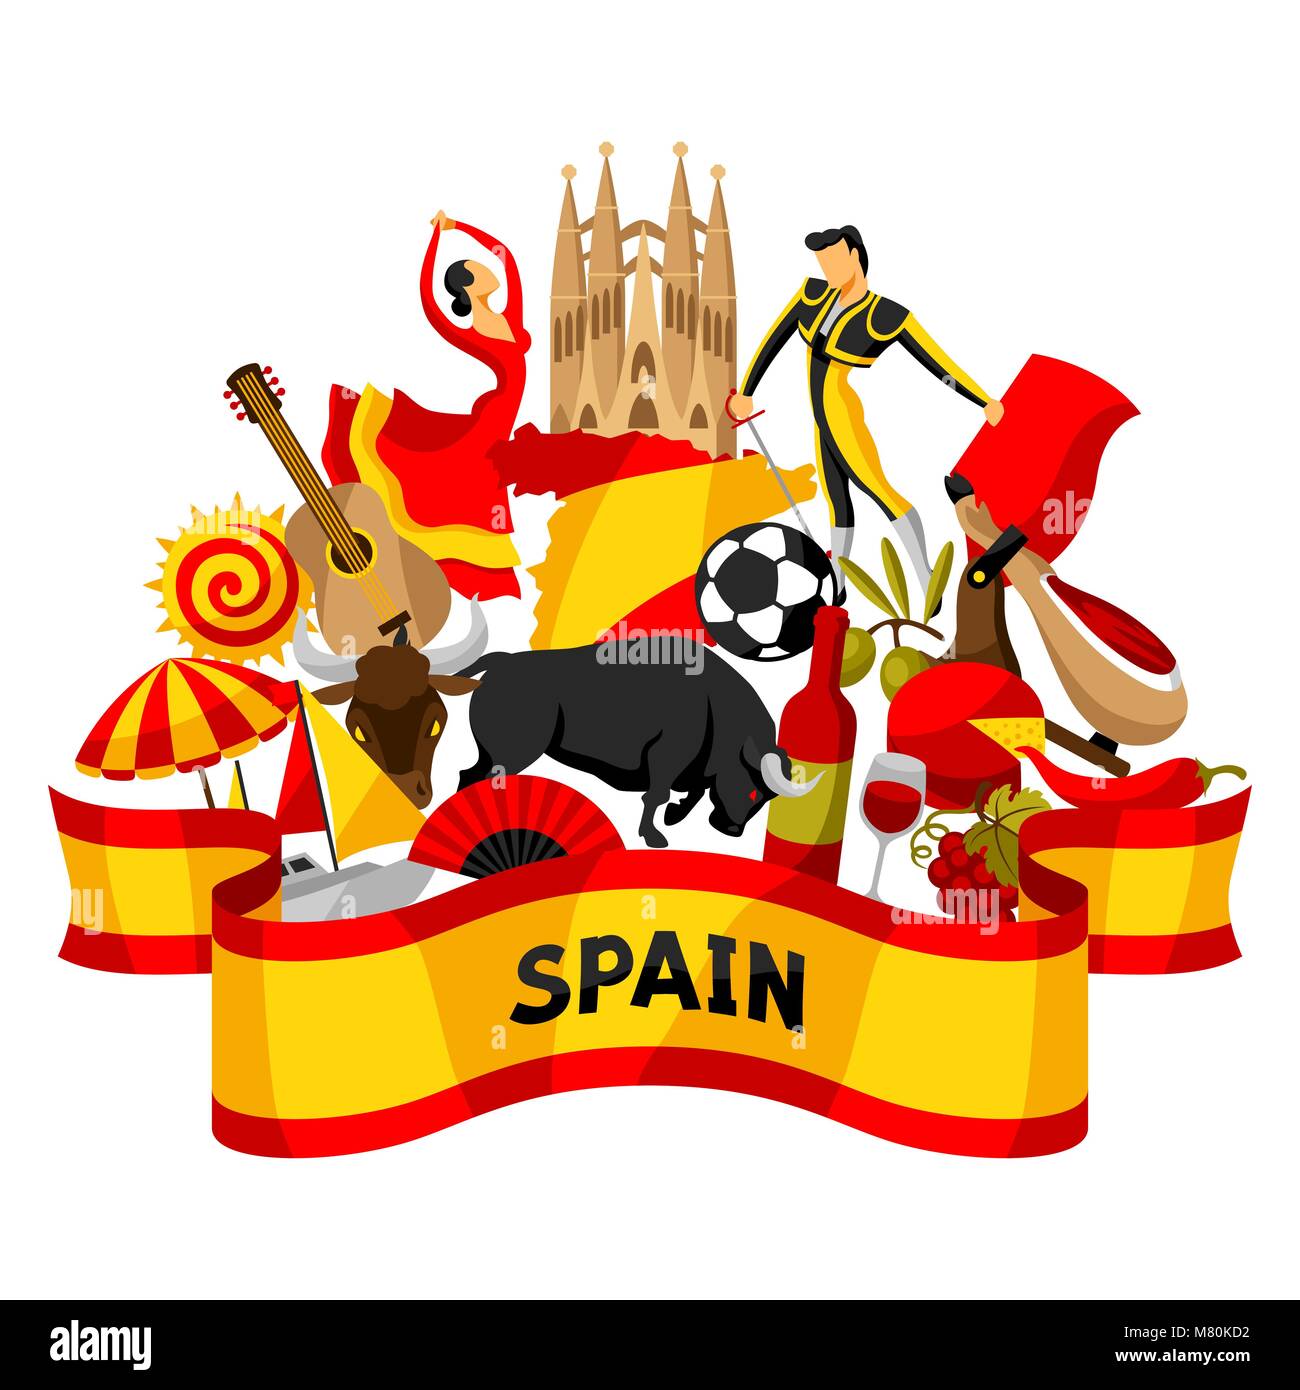 Espagne Conception D Arriere Plan L Espagnol Symboles Traditionnels Et D Objets Image Vectorielle Stock Alamy